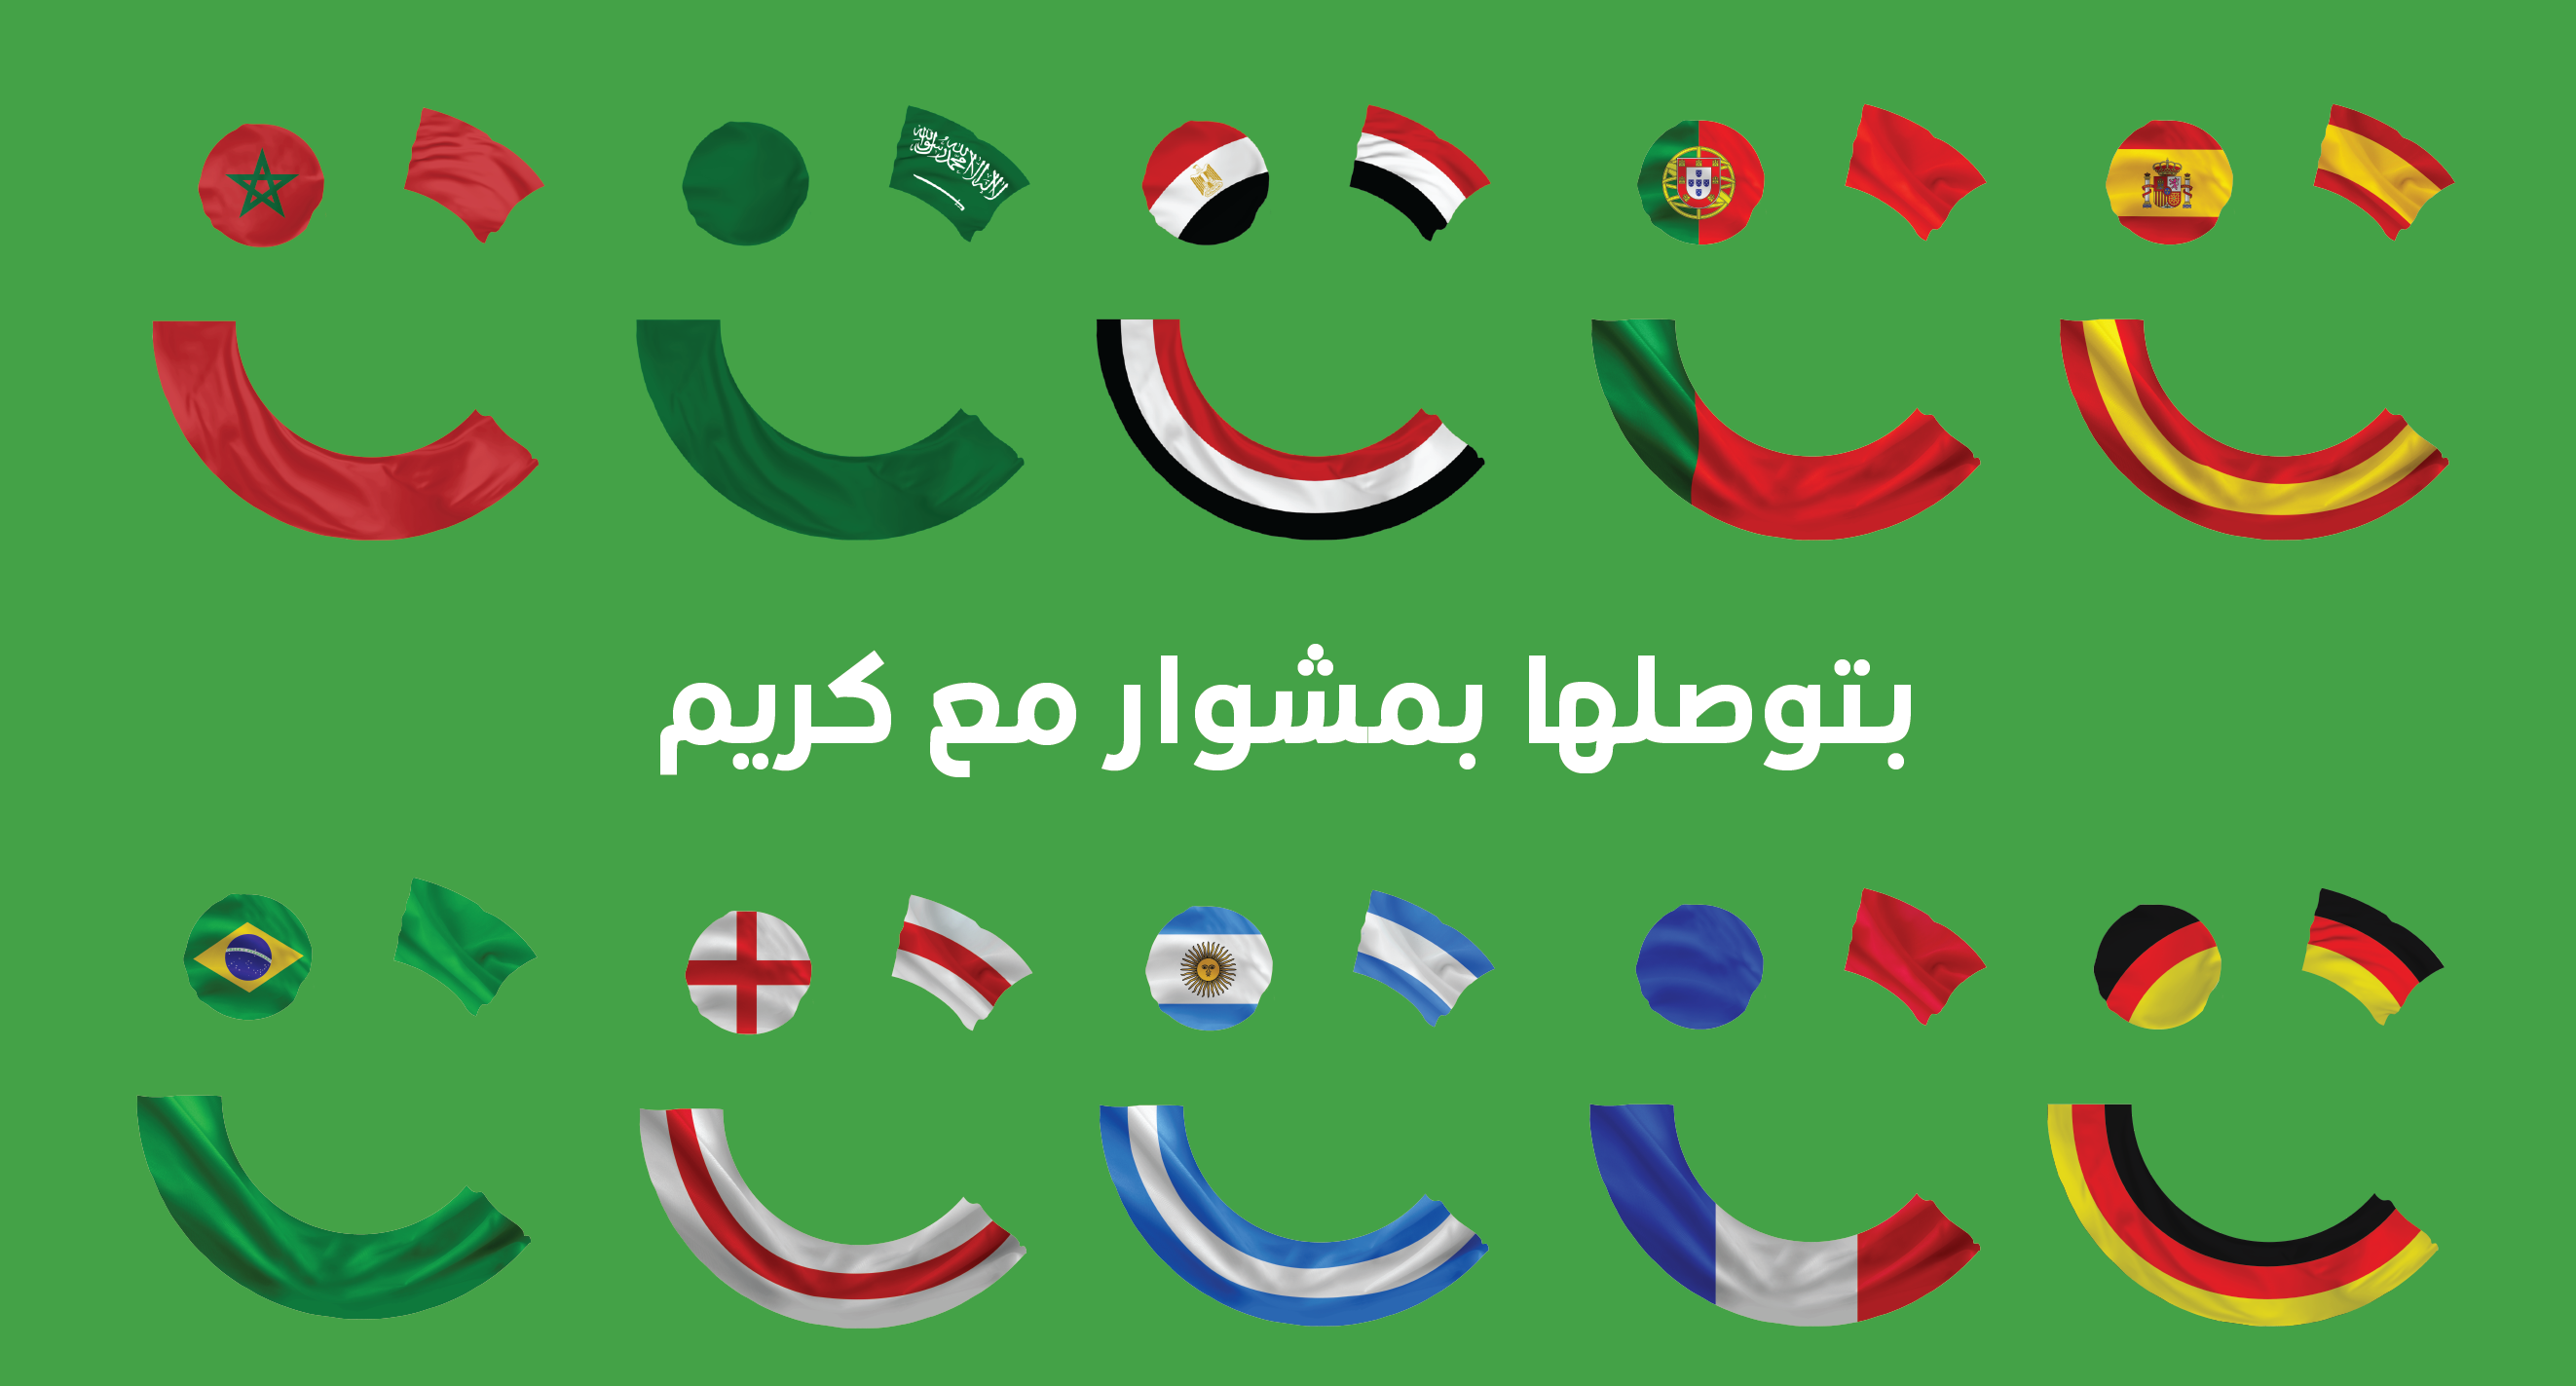 كريم تواصل فعاليات حملتها الخاصة بكأس العالم بتوصلها بمشوار